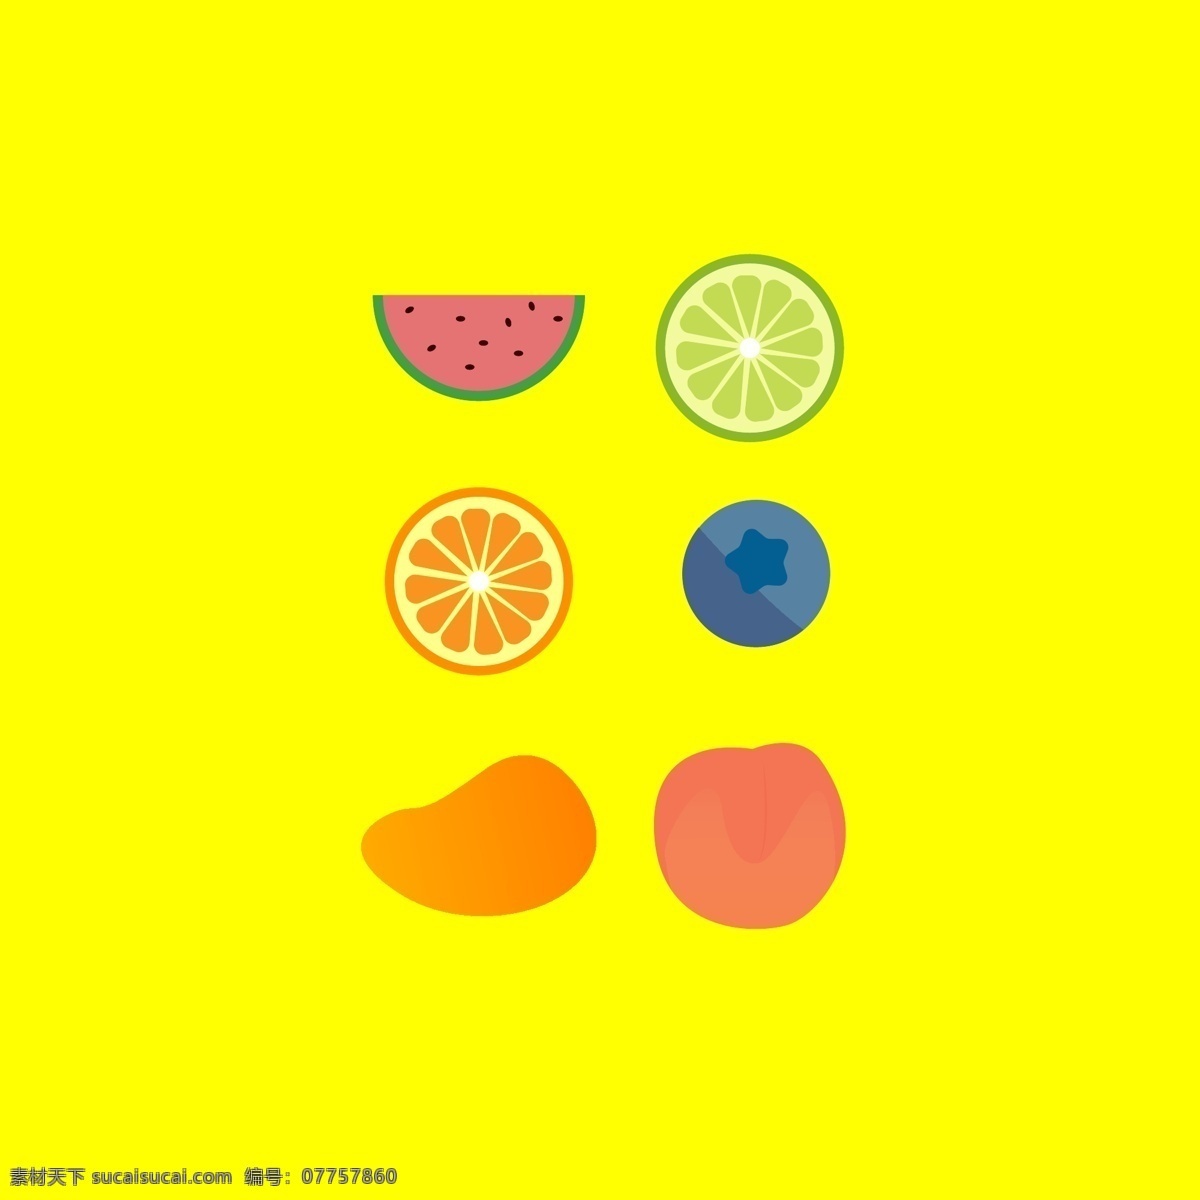 卡通 可爱 矢量 水果 设计素材 西瓜 芒果 蓝莓 卡通可爱 设计元素 青柠 桃子